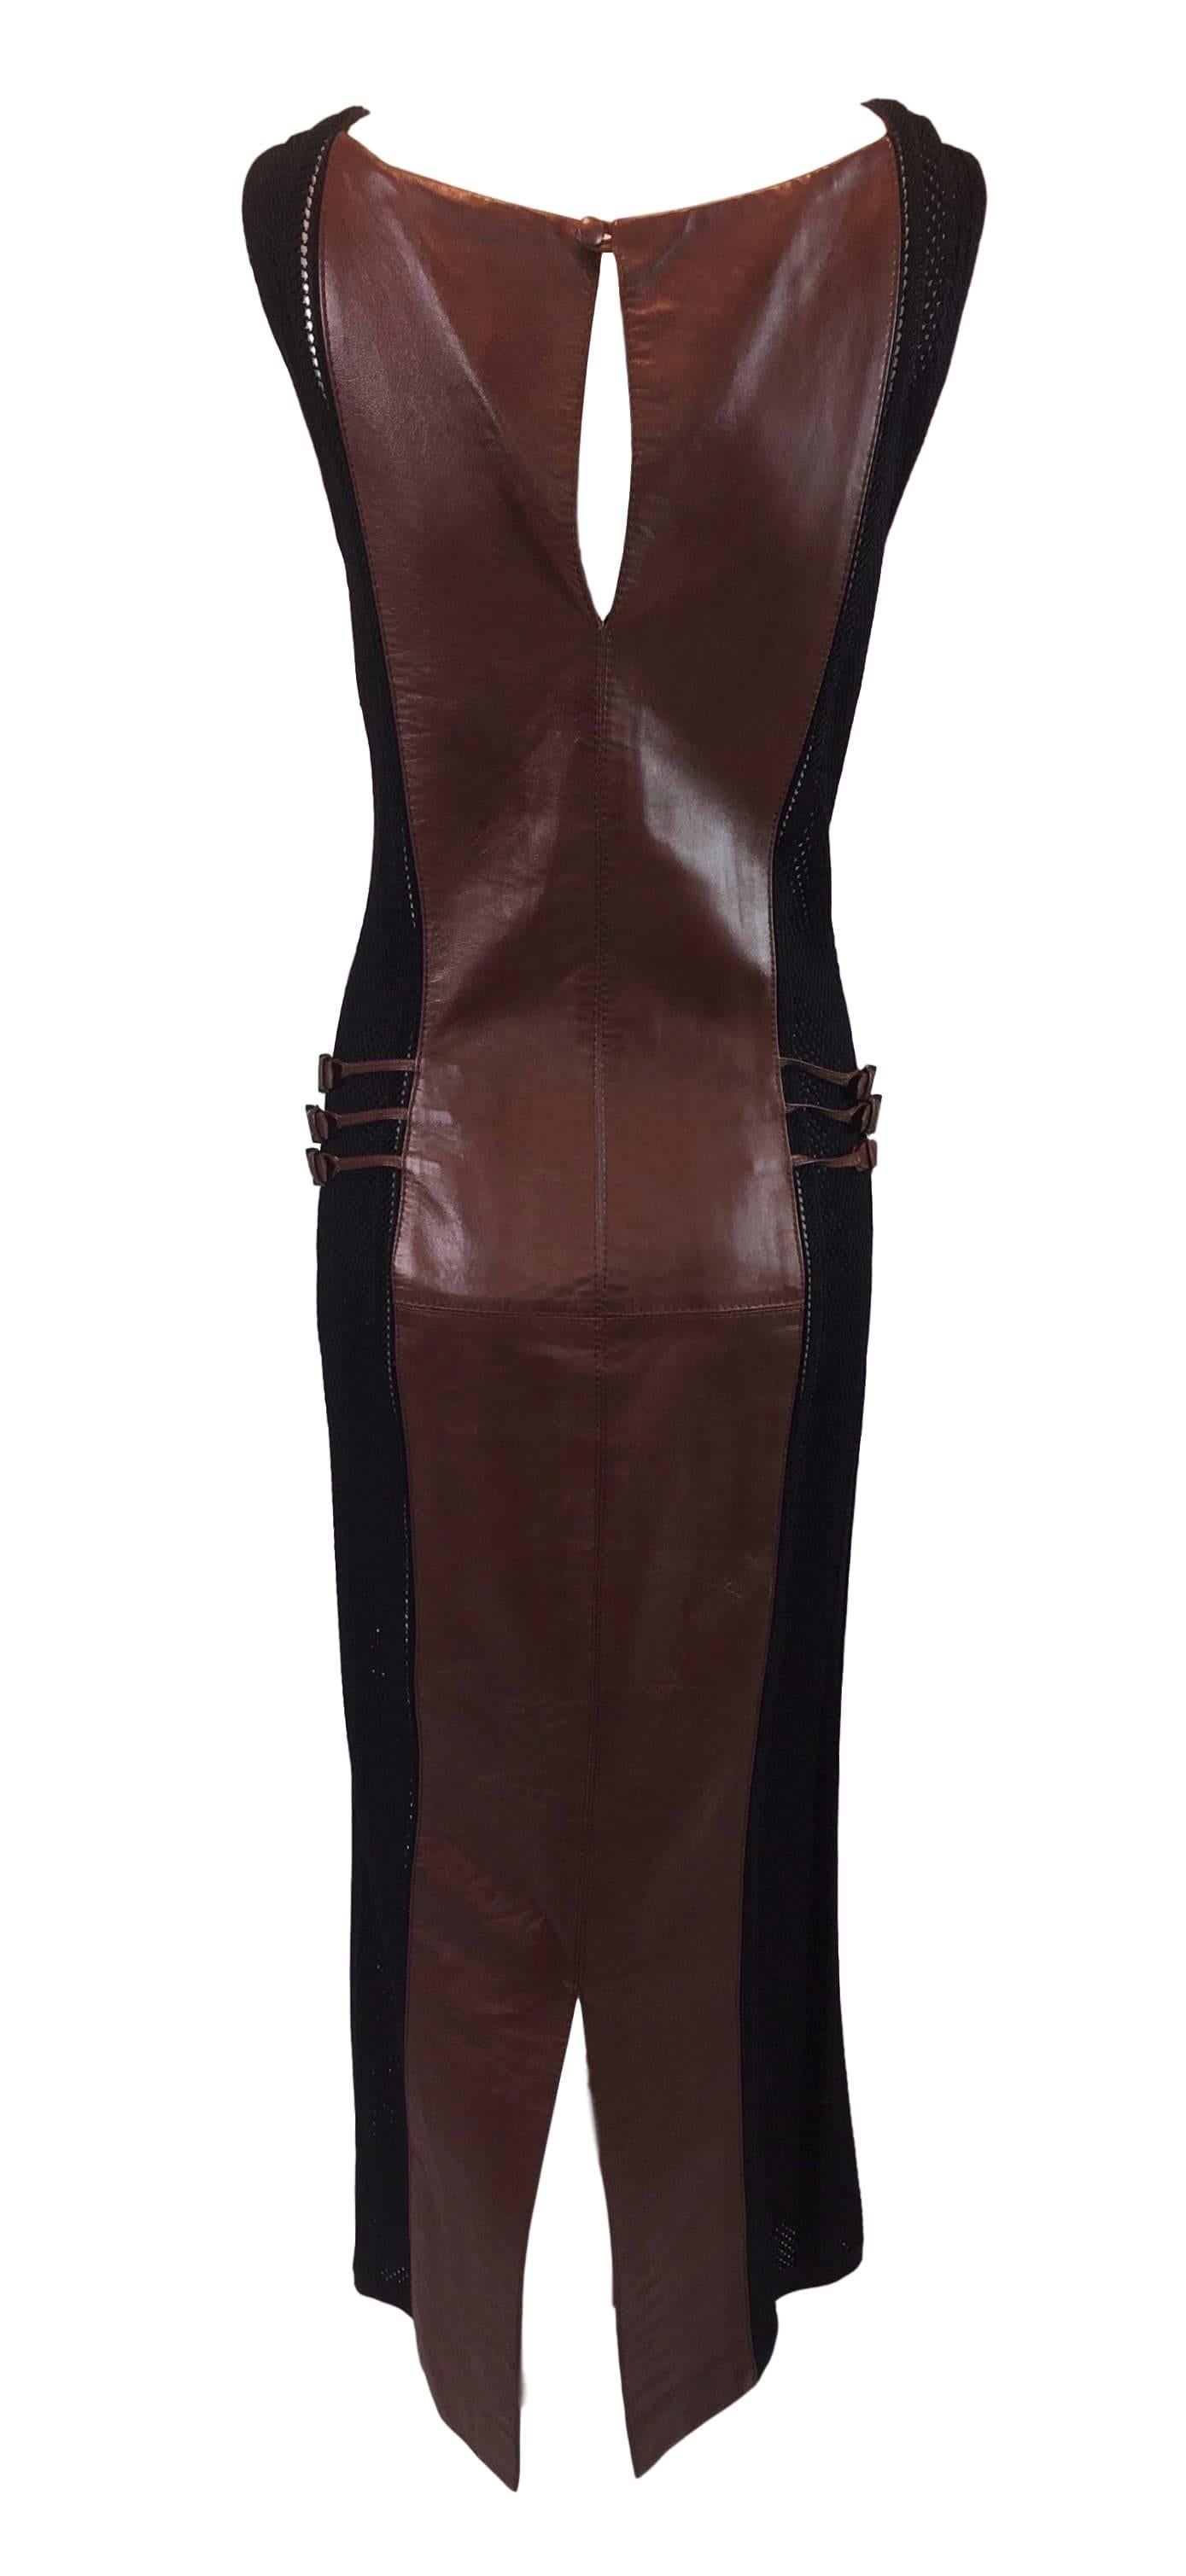 Women's 1990's Gianfranco Ferre Sheer Knit Net Black & Brown Leather Buckle Gown Dress